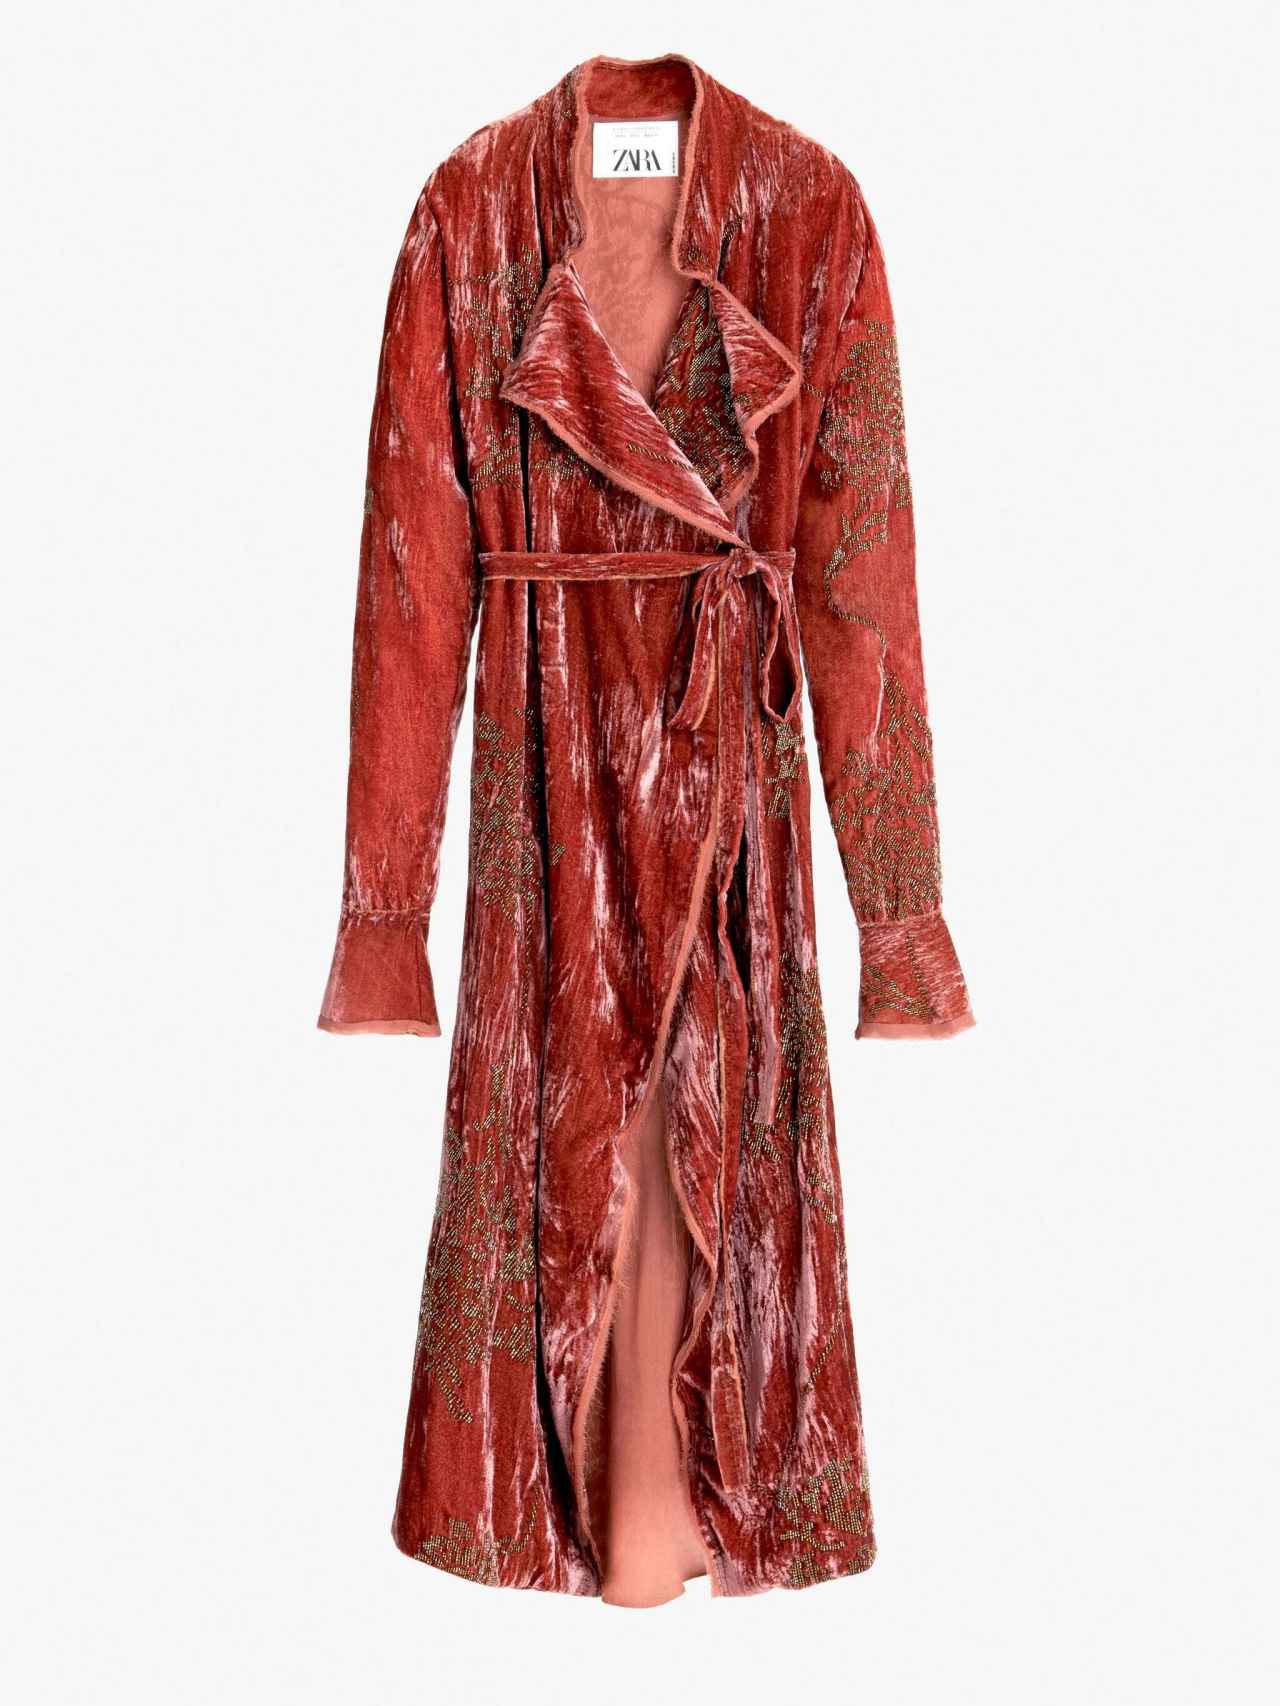 Zara ha conseguido agotar en tiempo récord su original kimono en terciopelo rojo.